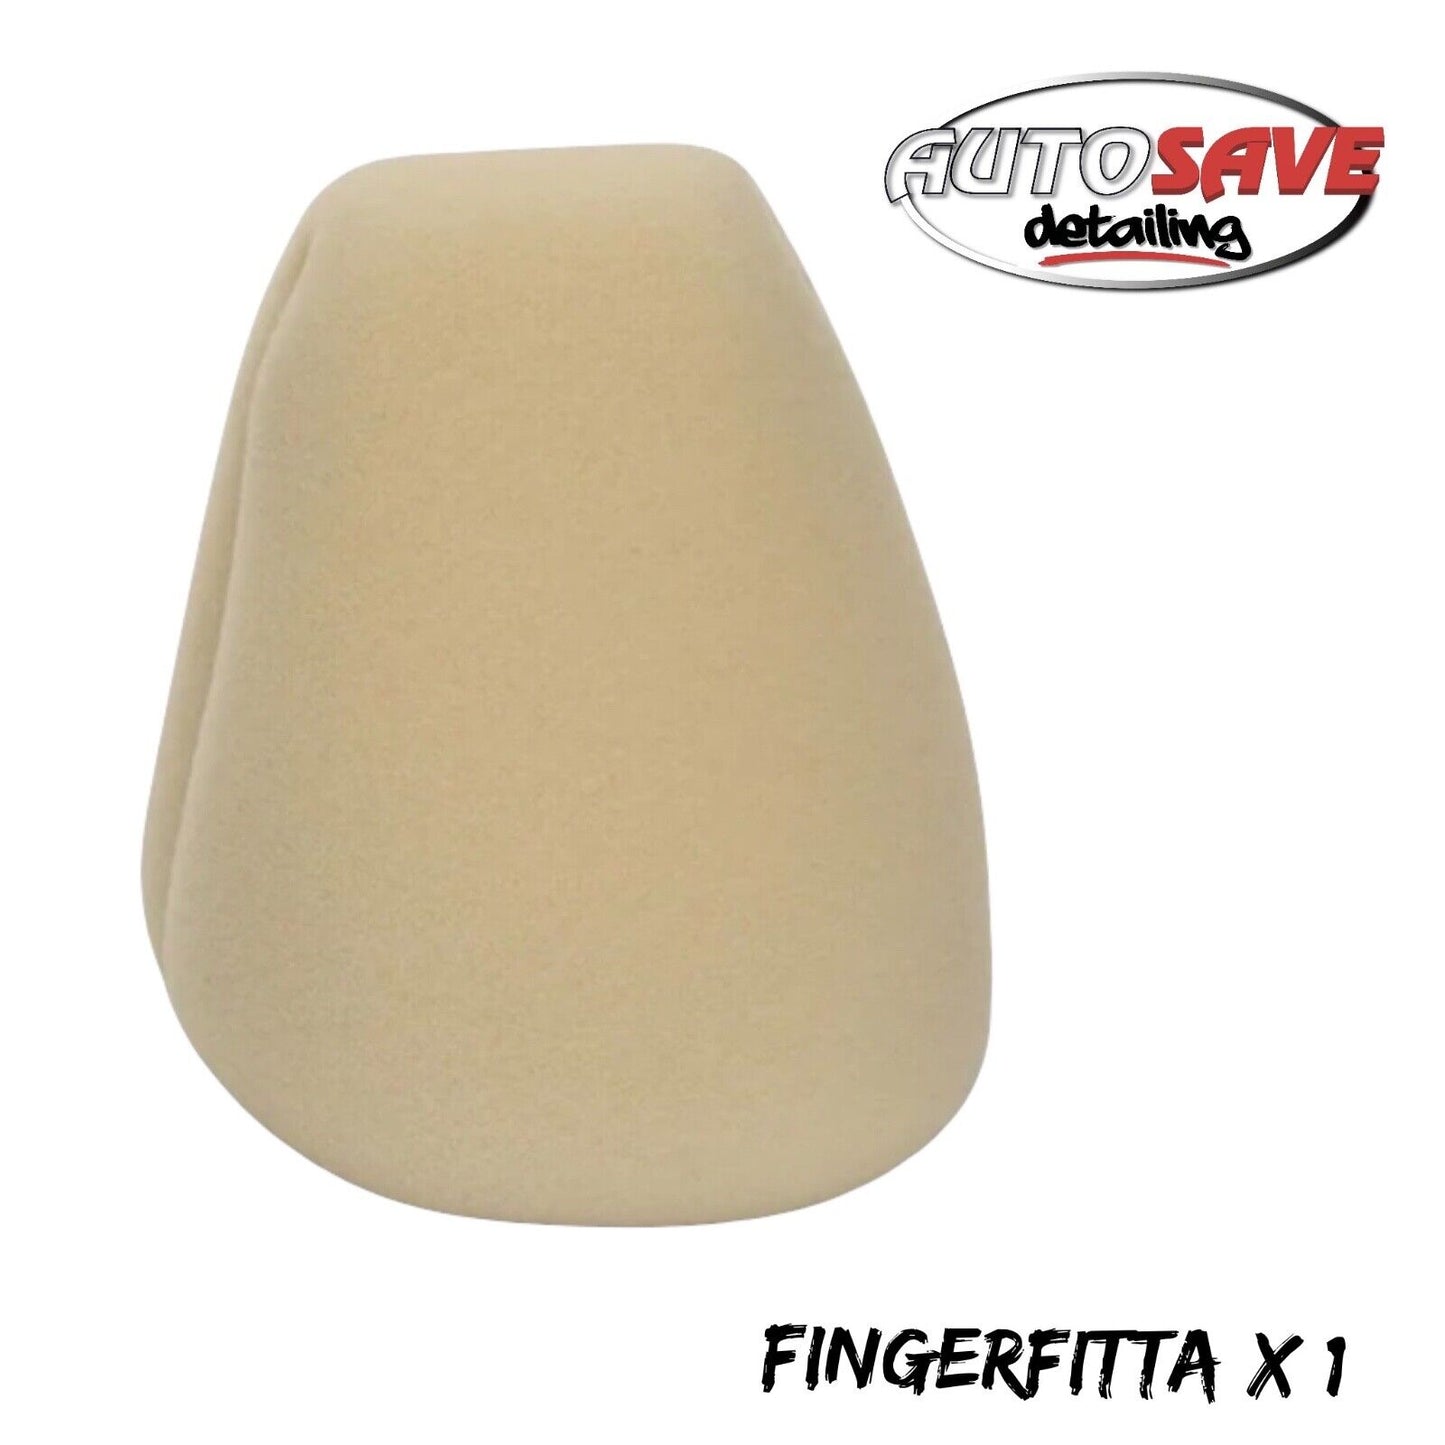 Stjarnagloss Fingerfitta foam wax applicator x 1